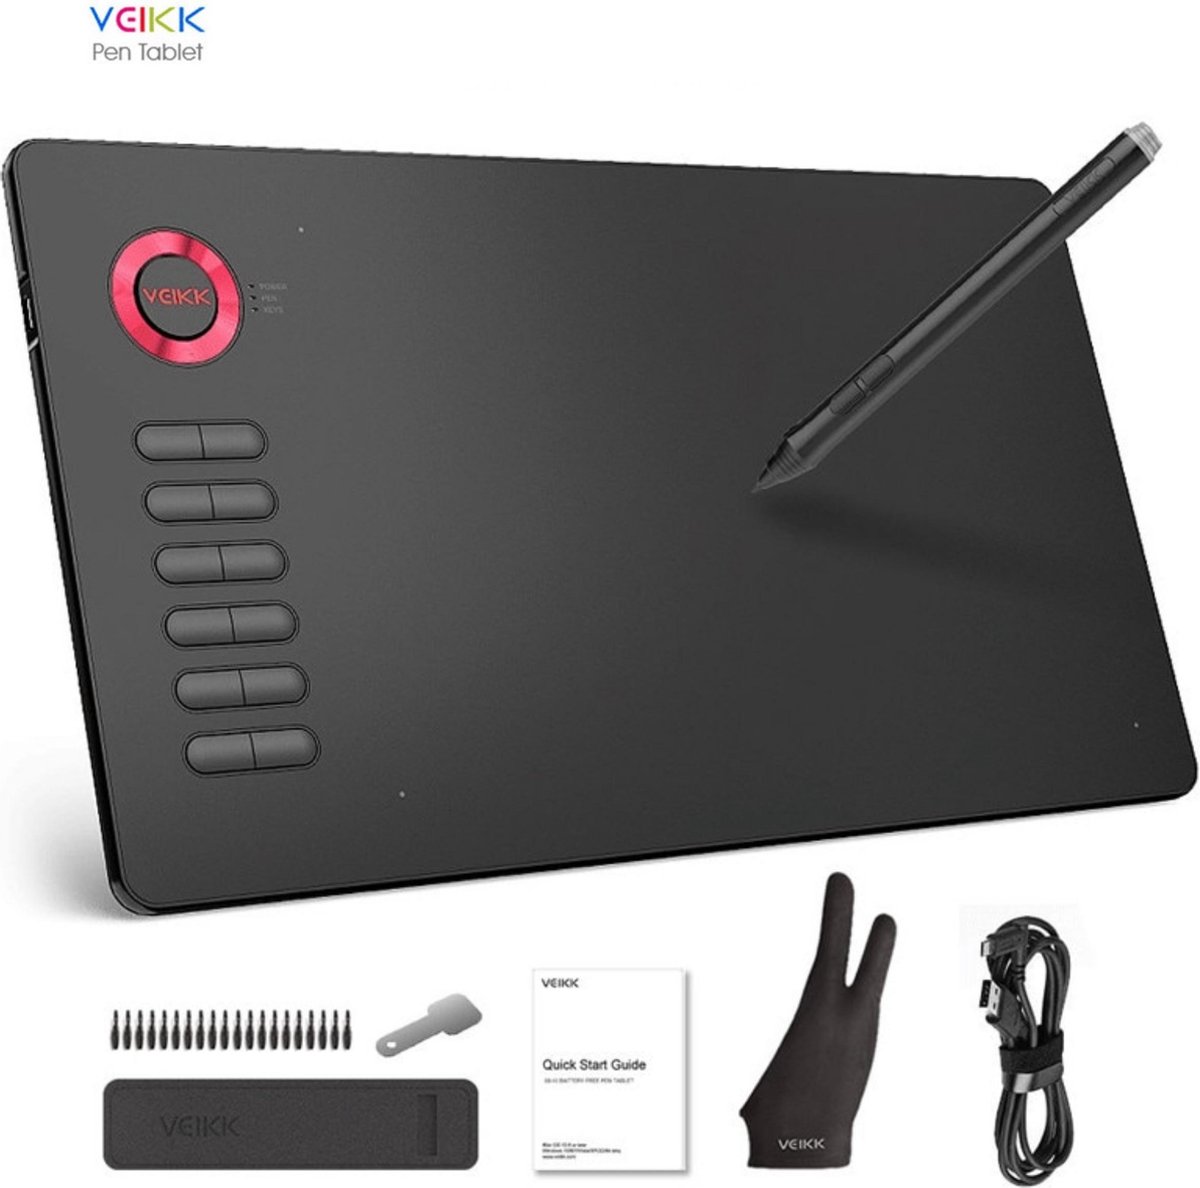 Tekentablet Veikk A15 - 10x6 inch - 5080 Lpi - grafische XL teken tablet - Batterij vrije pen - 12 sneltoetsen - Gratis tekenhandschoen